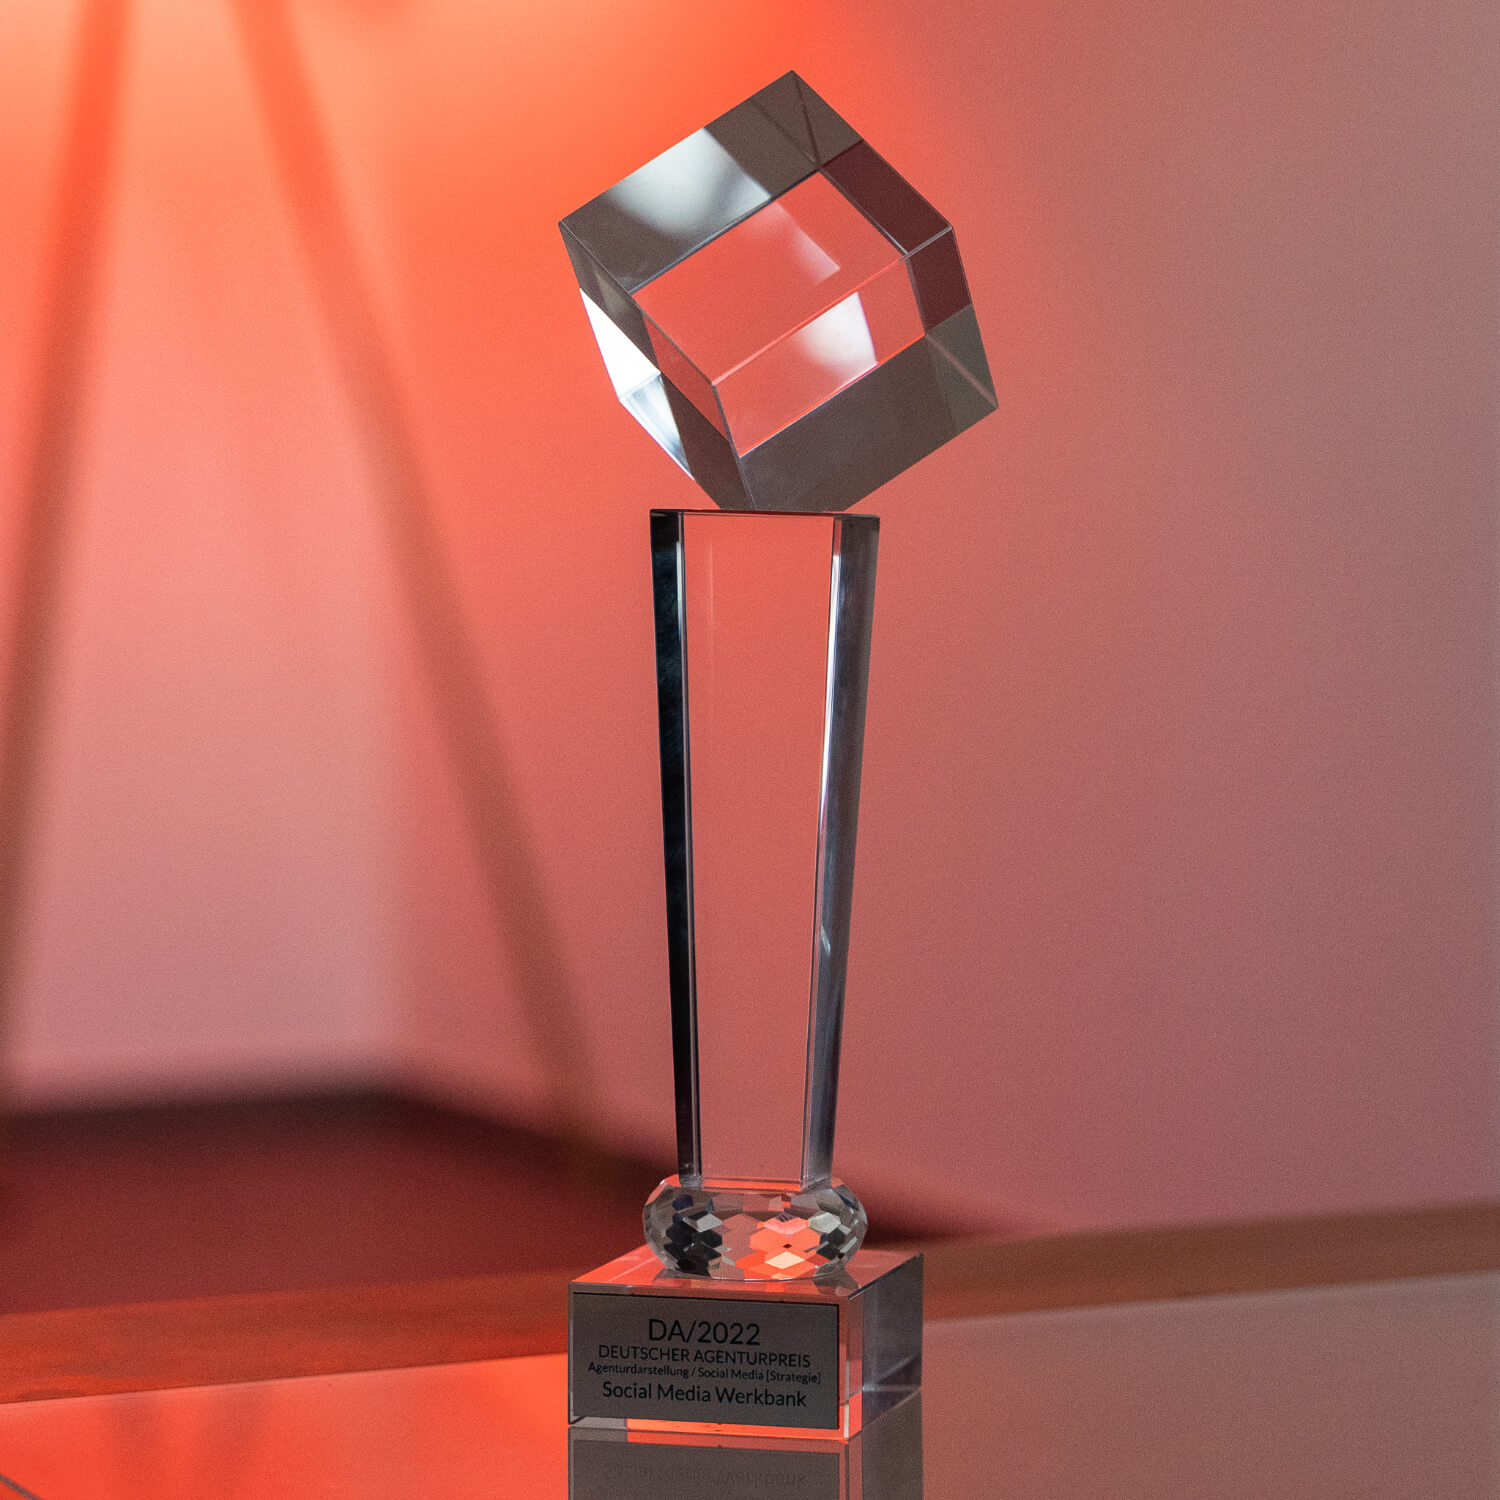 Social Media Werkbank ist Award Gewinner Agentur Deutscher Agenturpreis 2022